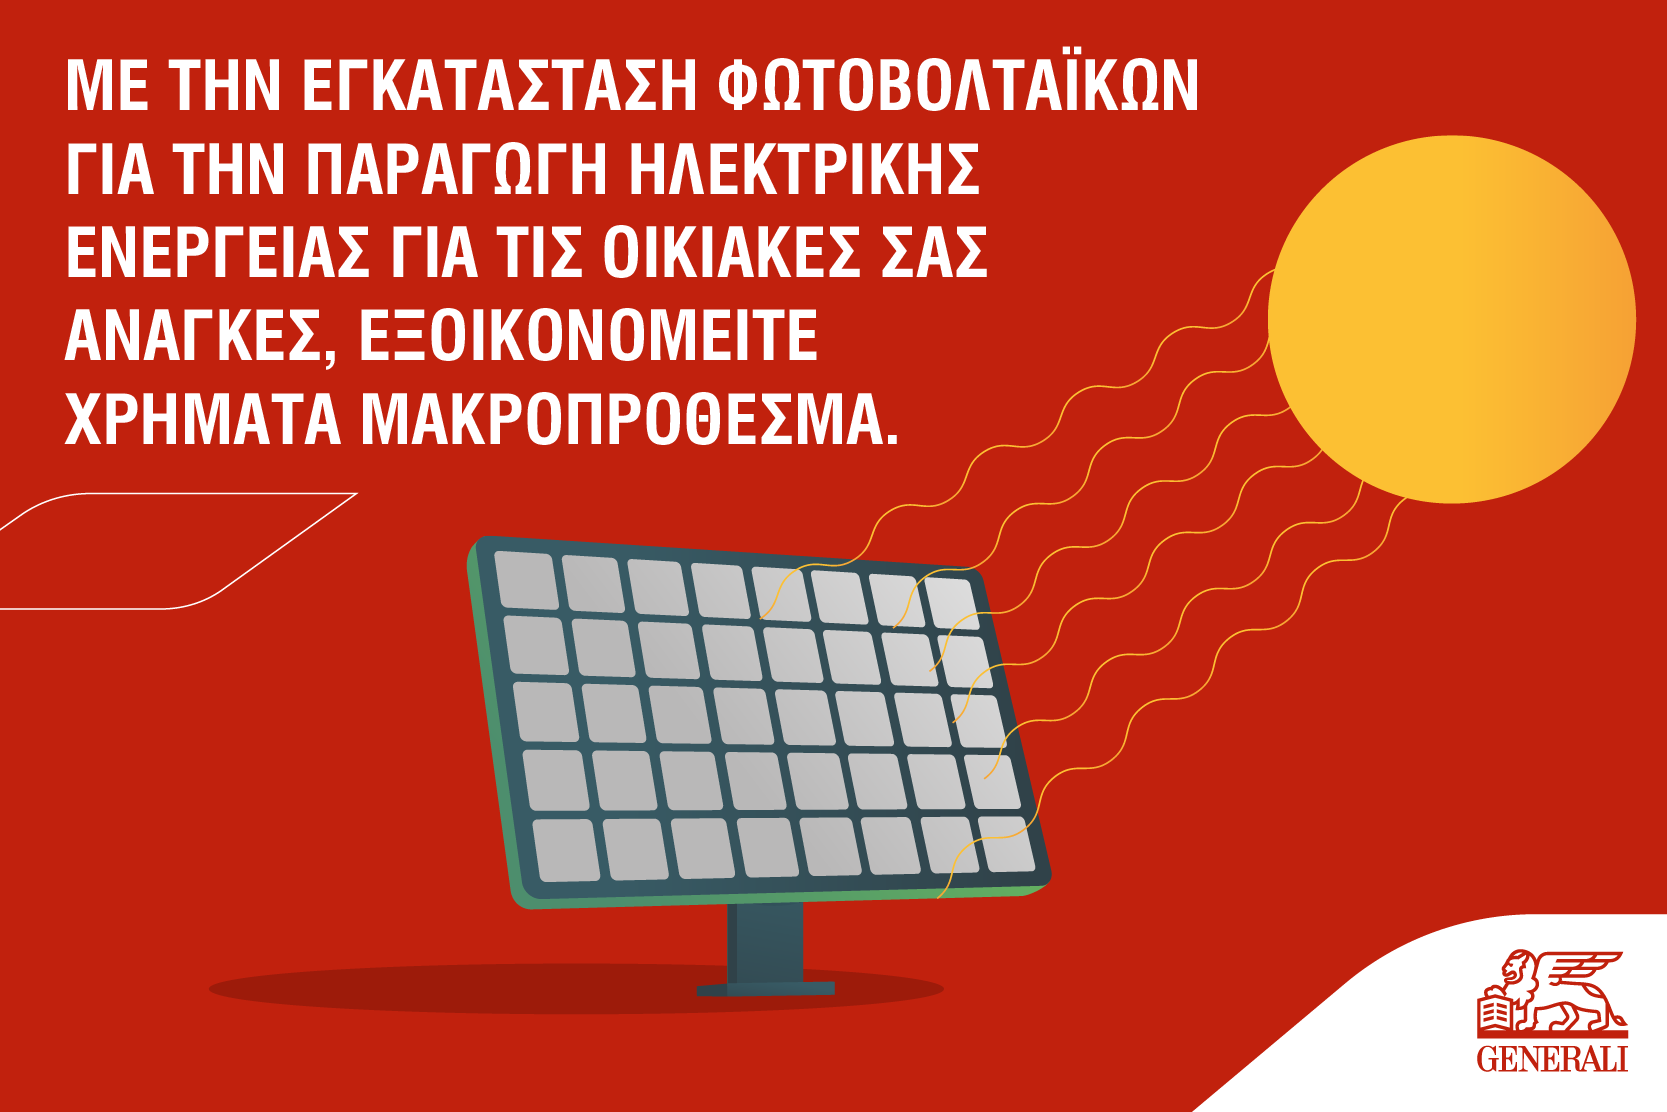 Generali_MG_ZeroCarbonElectricity_Greek-06.png